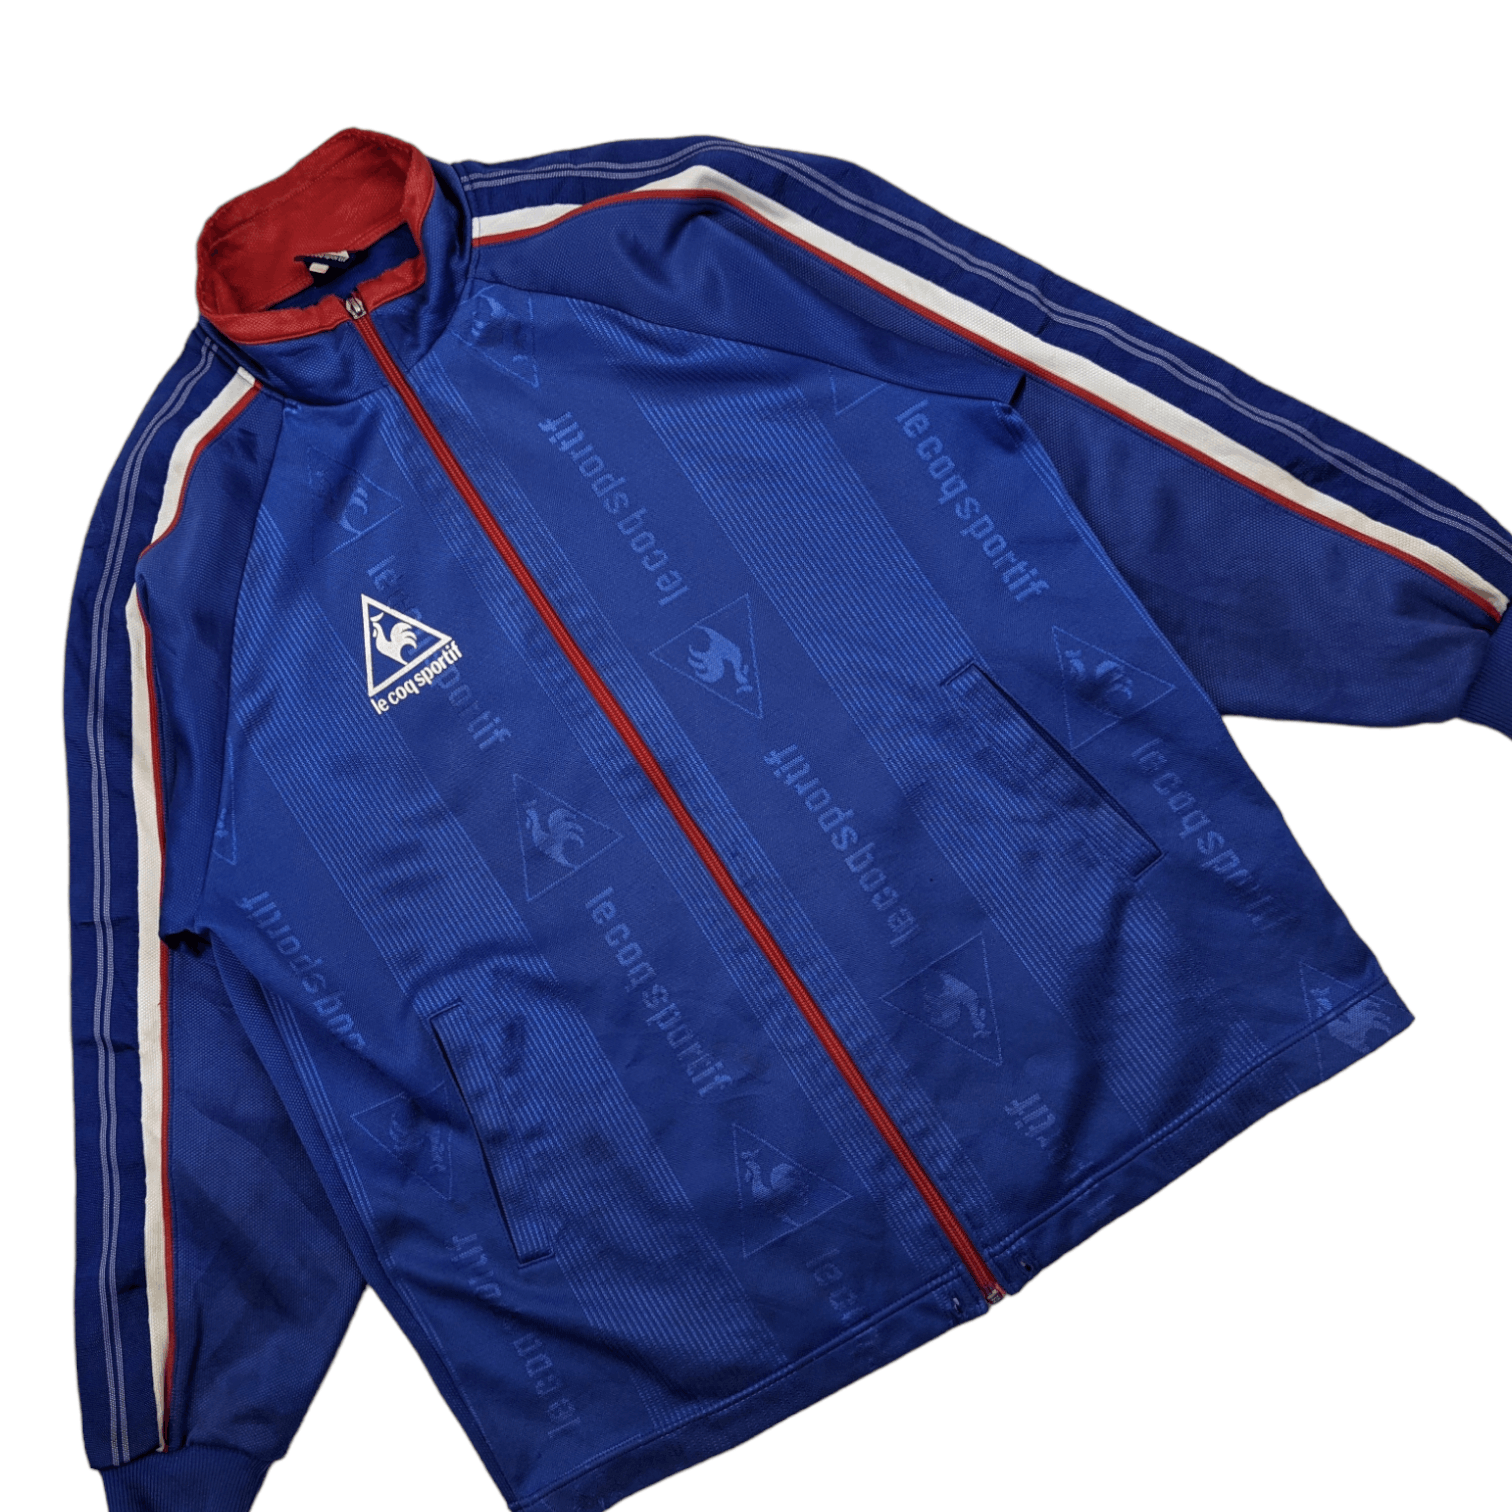 Le Coq Sportif Vintage 90's LE COQ SPORTIF Sportswear Tracktop Jacket Size US L / EU 52-54 / 3 - 3 Thumbnail